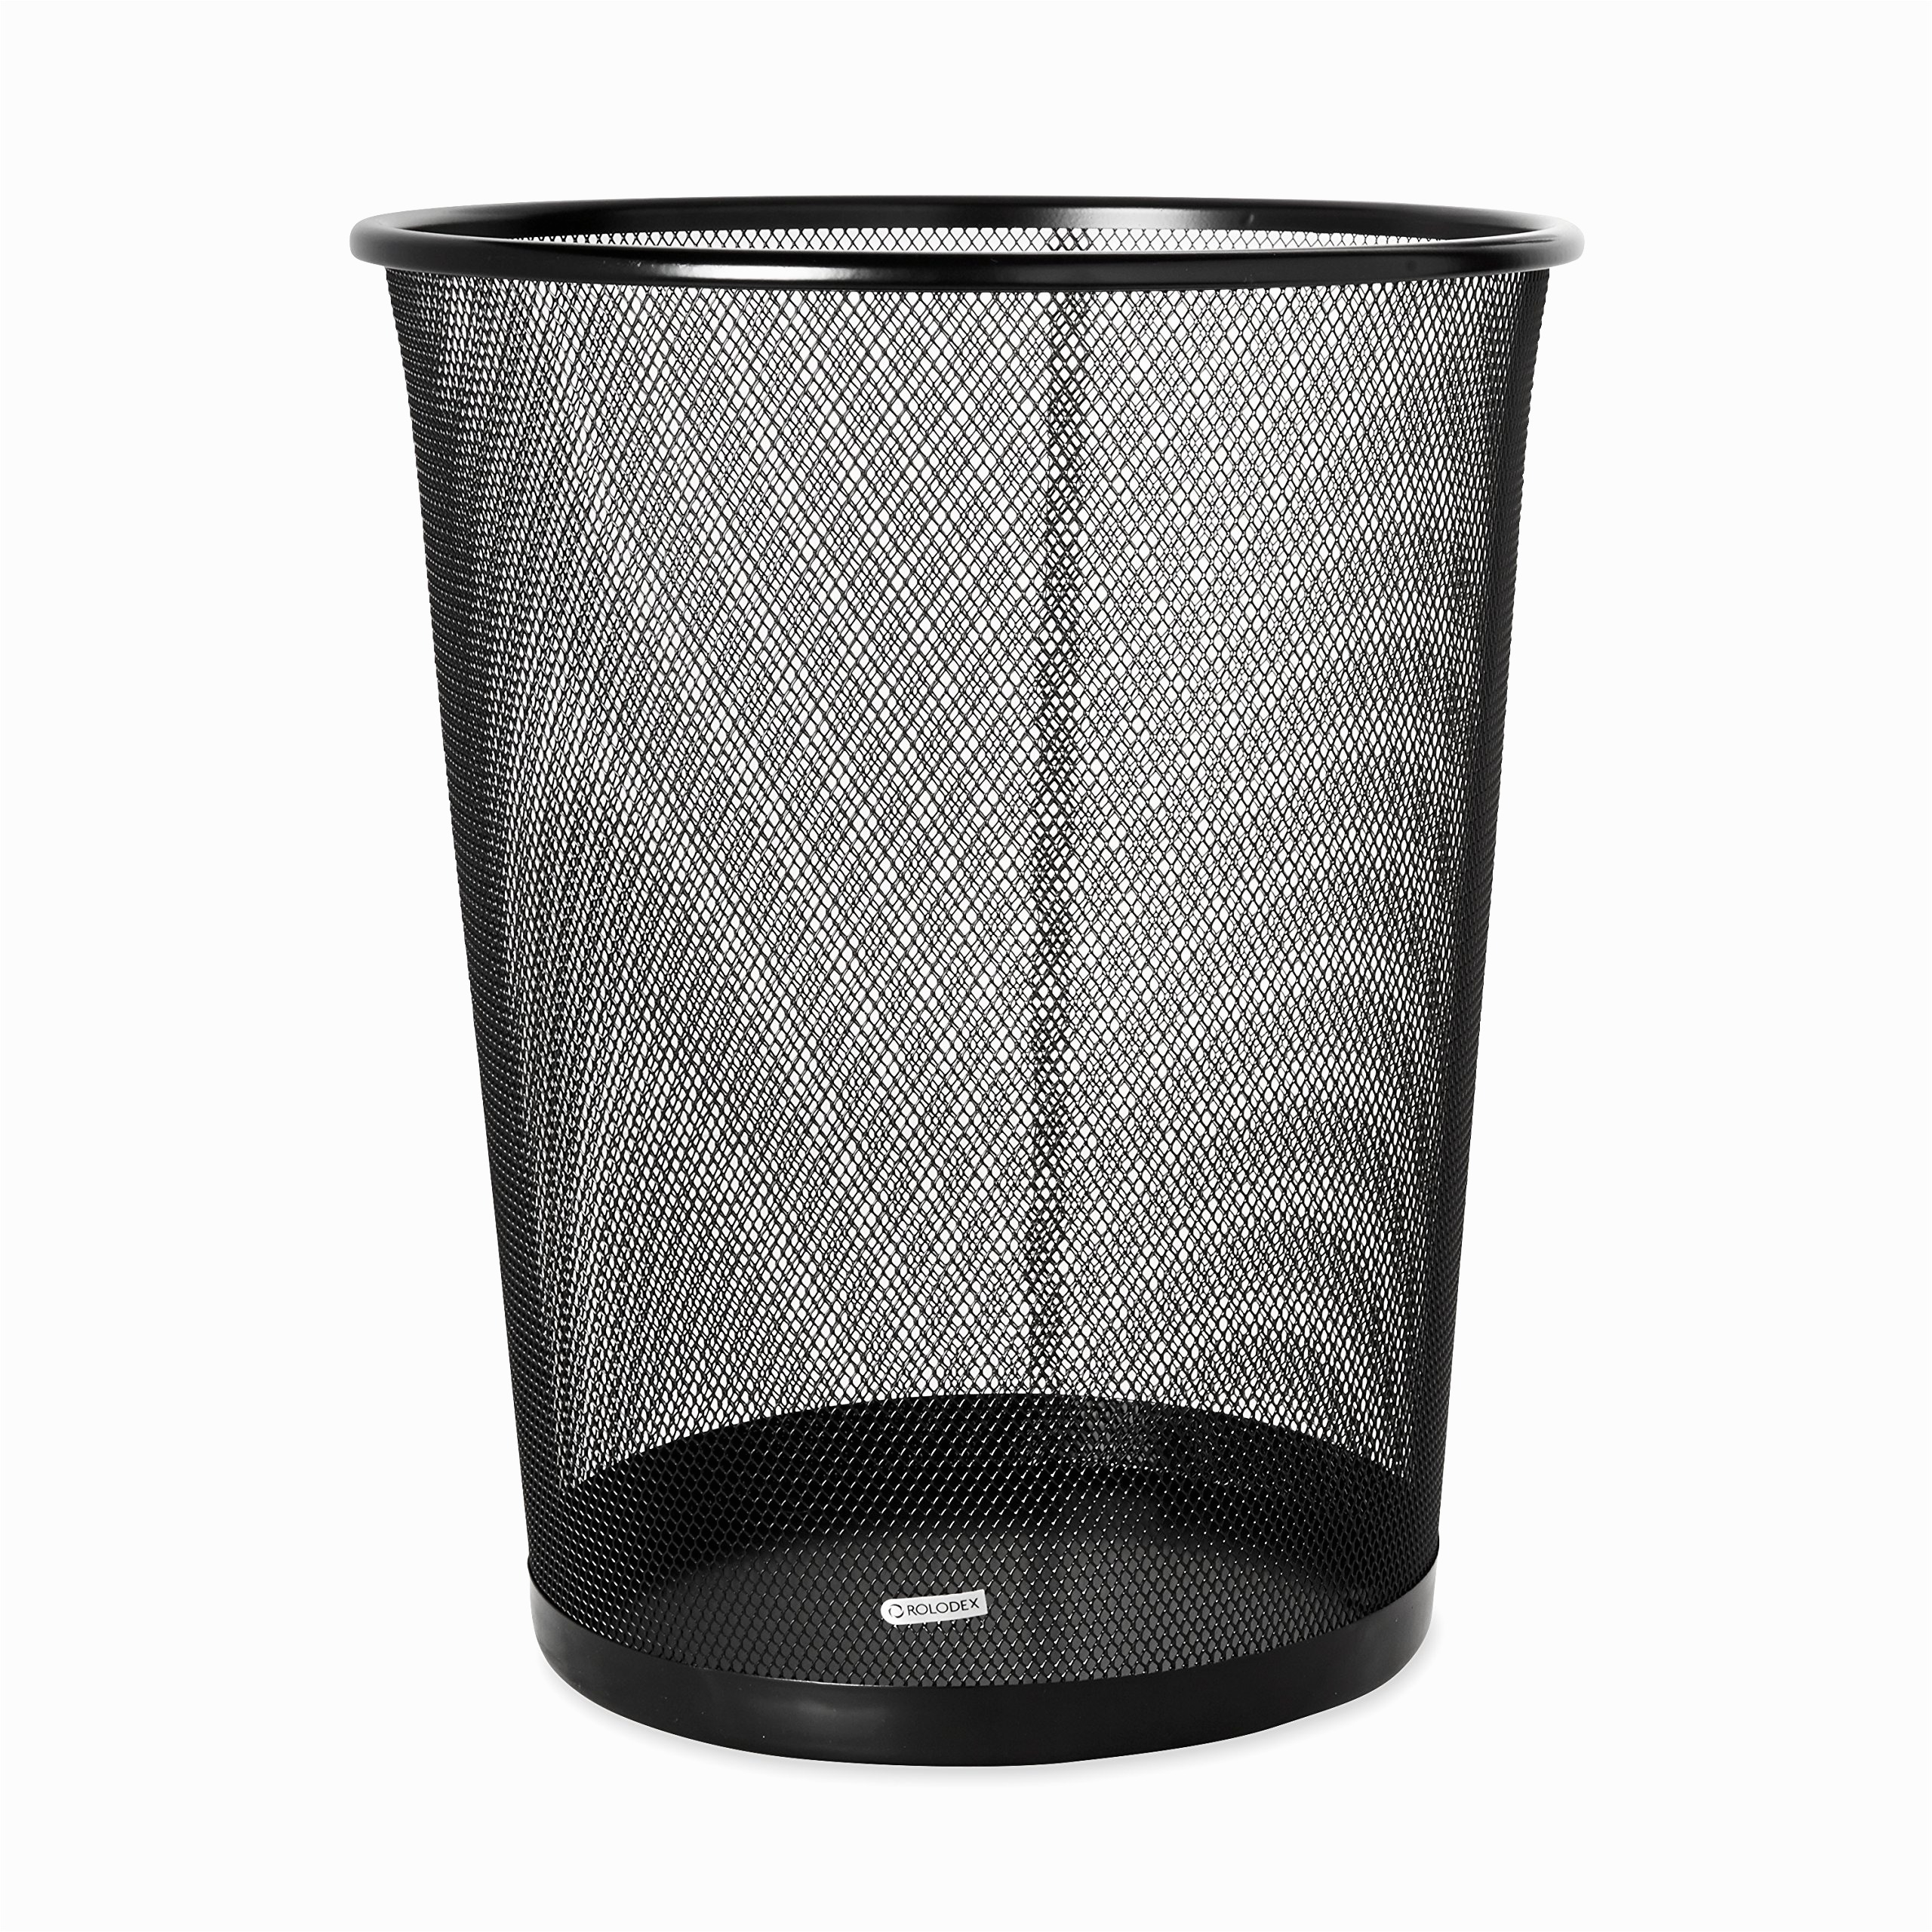 trash can for bedroom elegant new wastebasket trash can garbage mesh bin waste basket fice